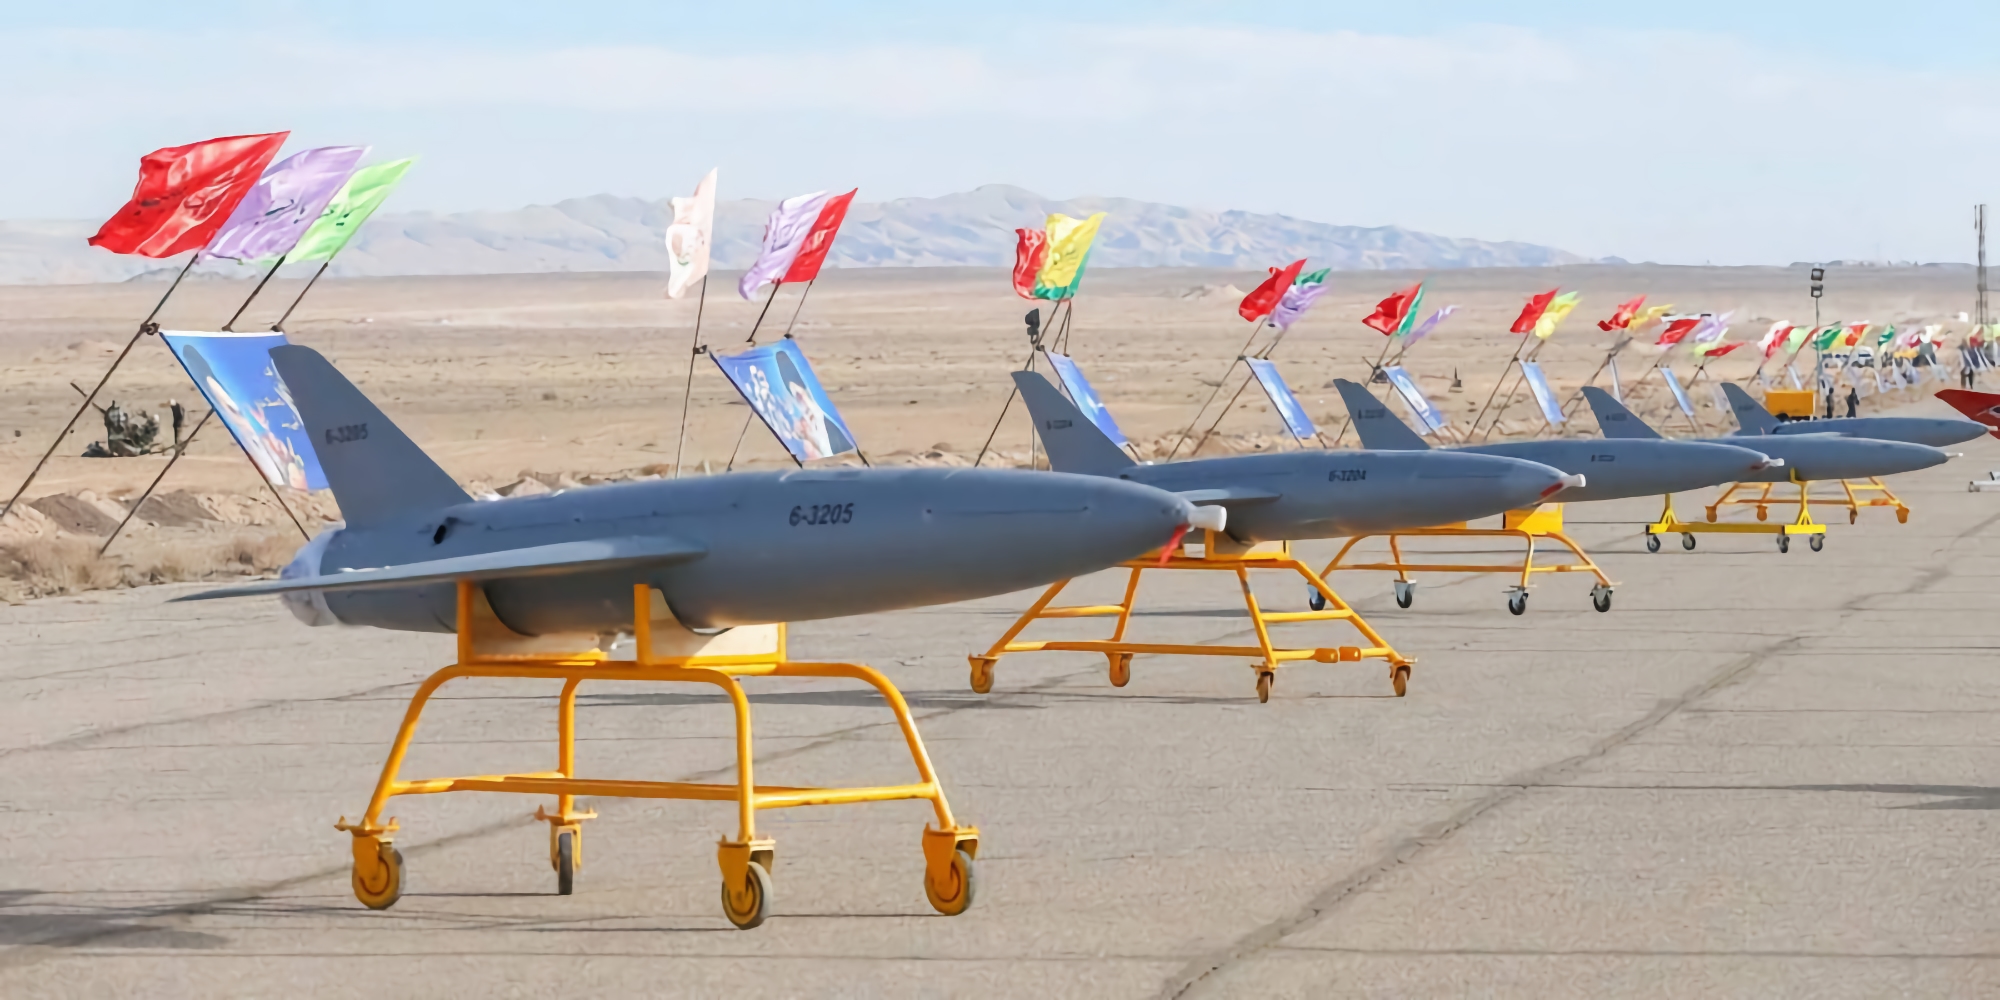 Medios de comunicación: Israel transferirá a Ucrania modernos sistemas antidrones para luchar contra los drones kamikaze iraníes Shahed-136